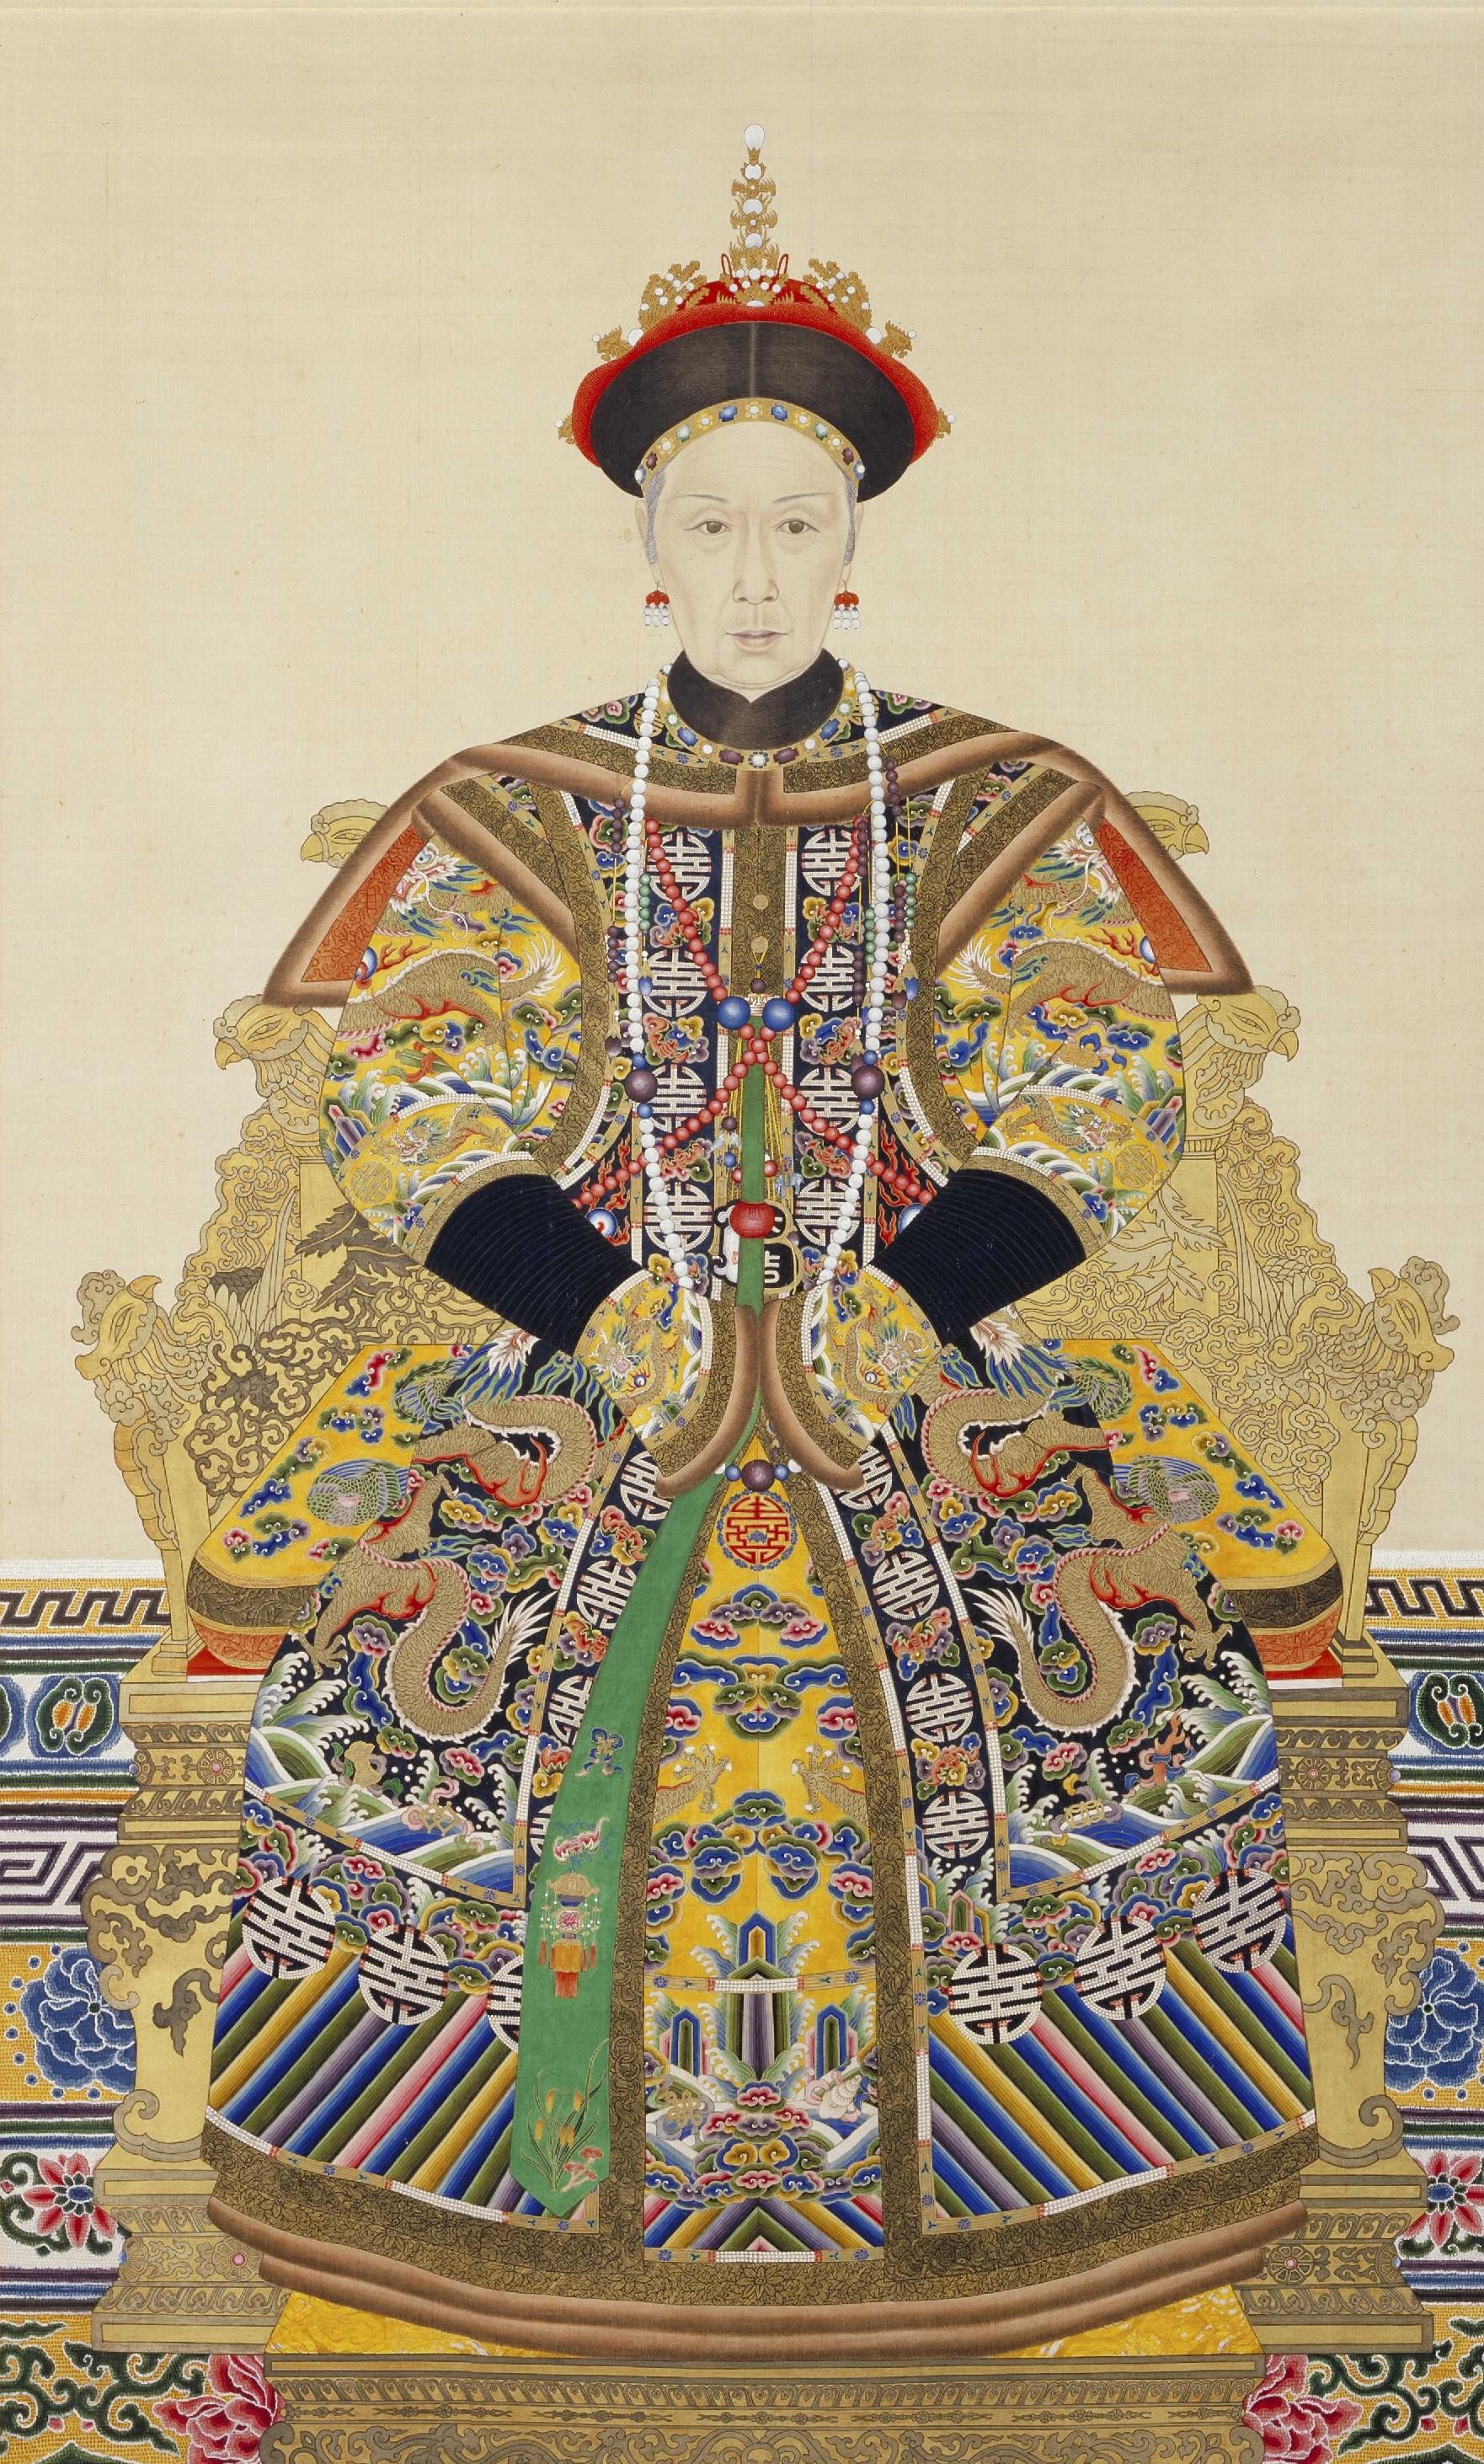 这才是真实的清朝妃子皇后形象:图3是"甄嬛",图6是乾隆的最爱